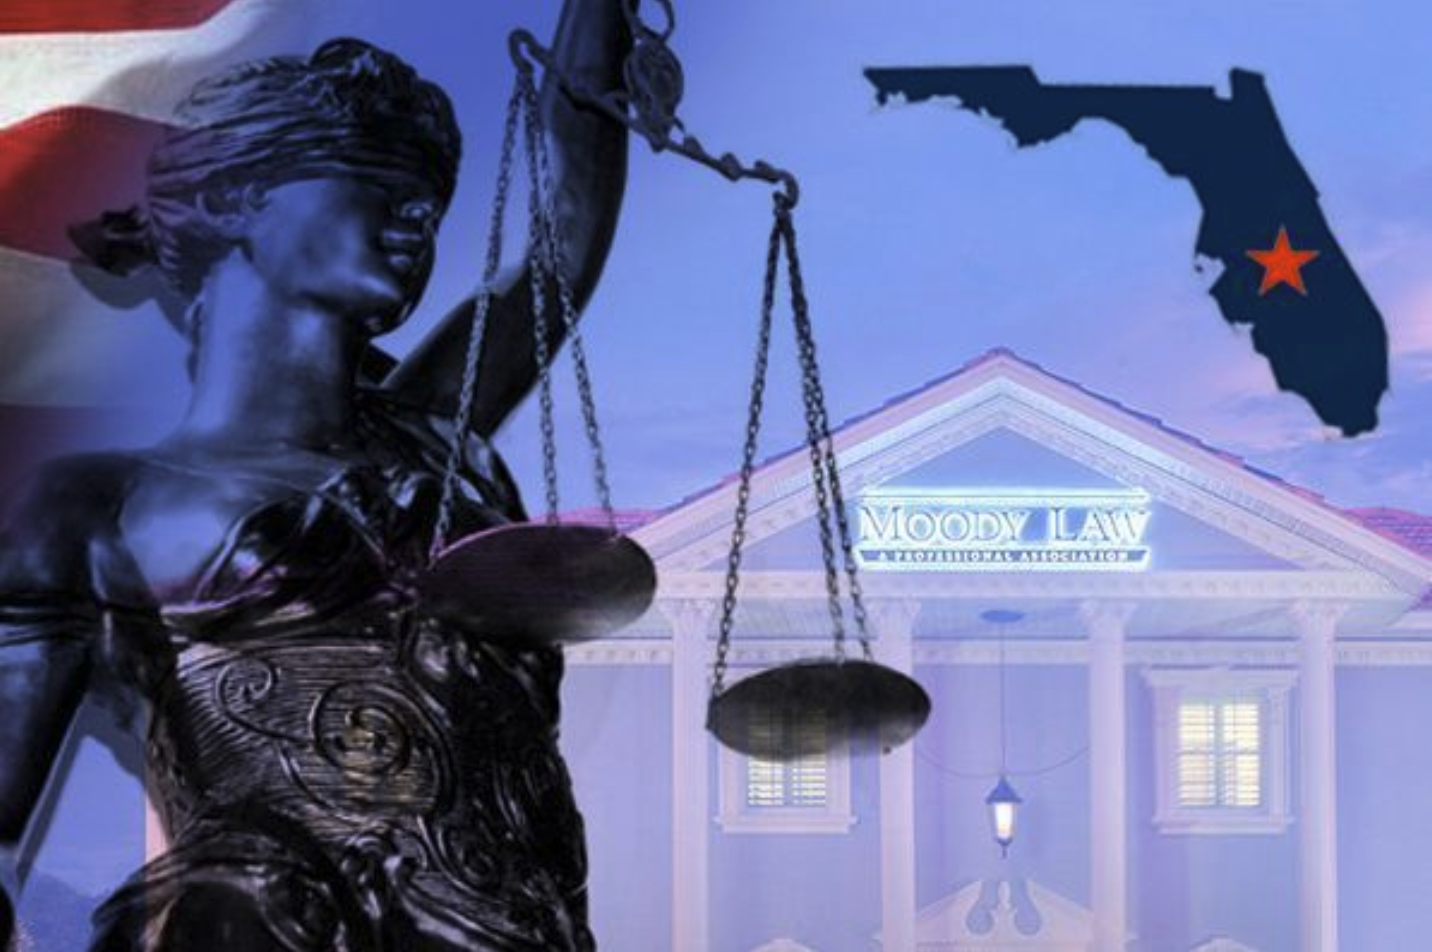 Moody Law, P.A. | Bartow, FL